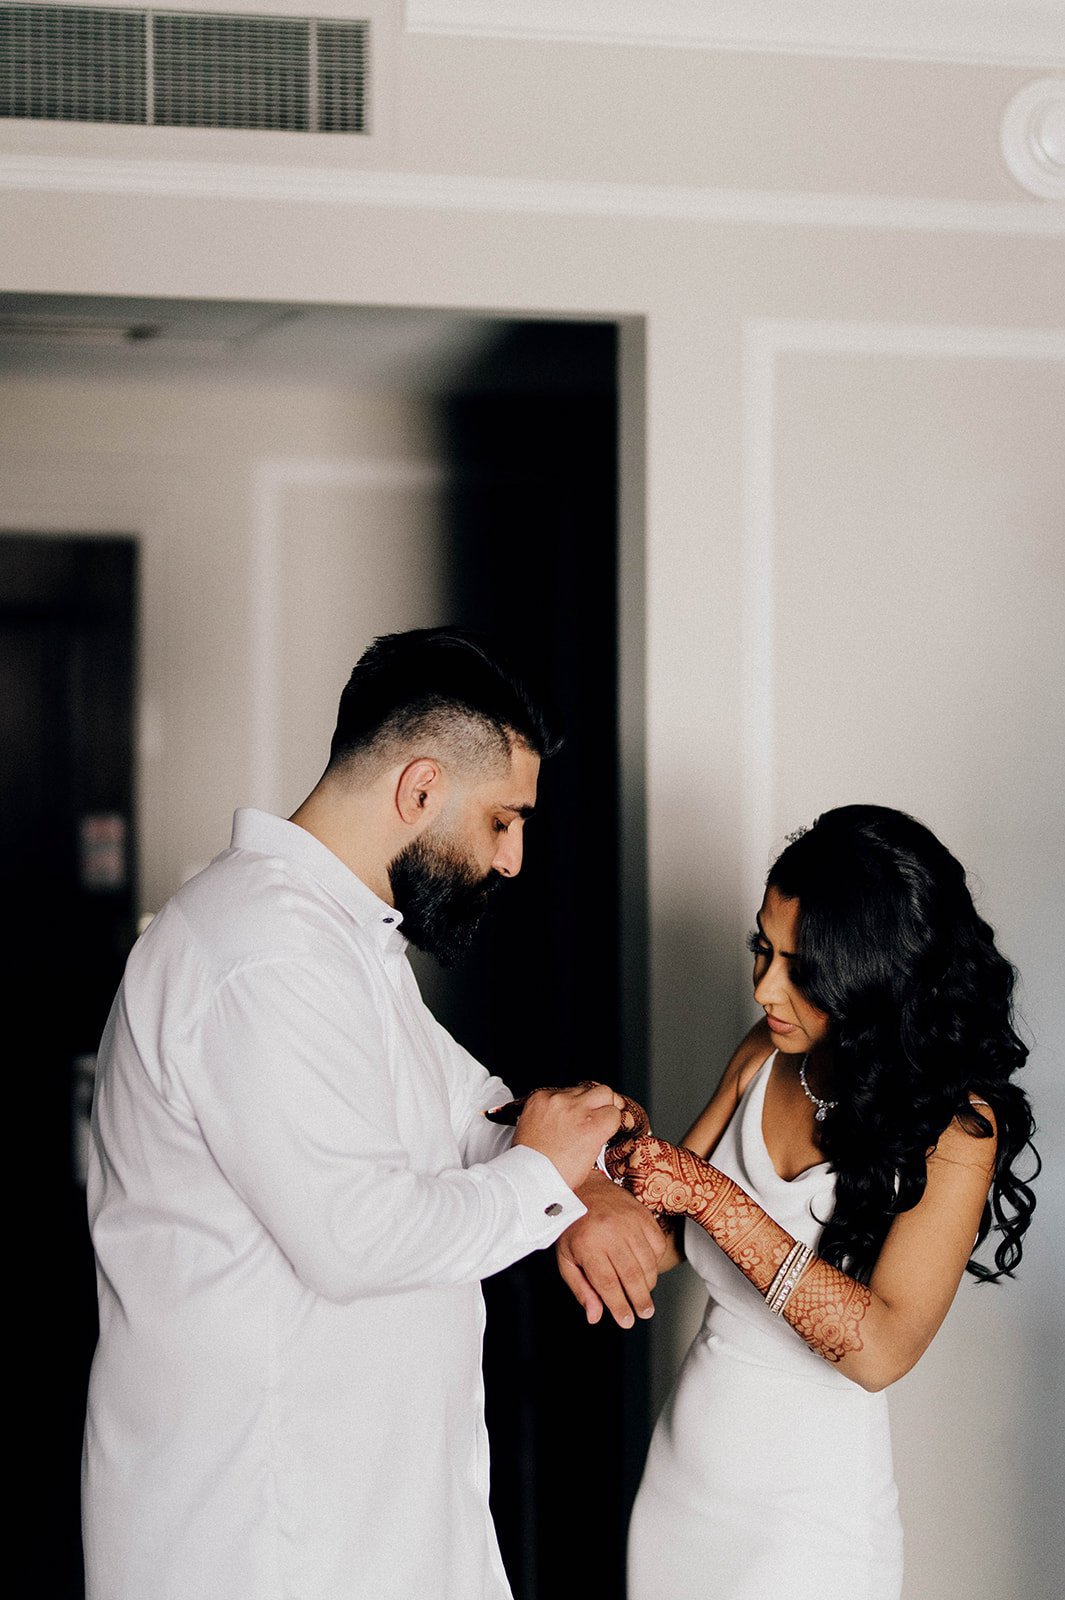 A groom helps a bride put on a bracelet.  